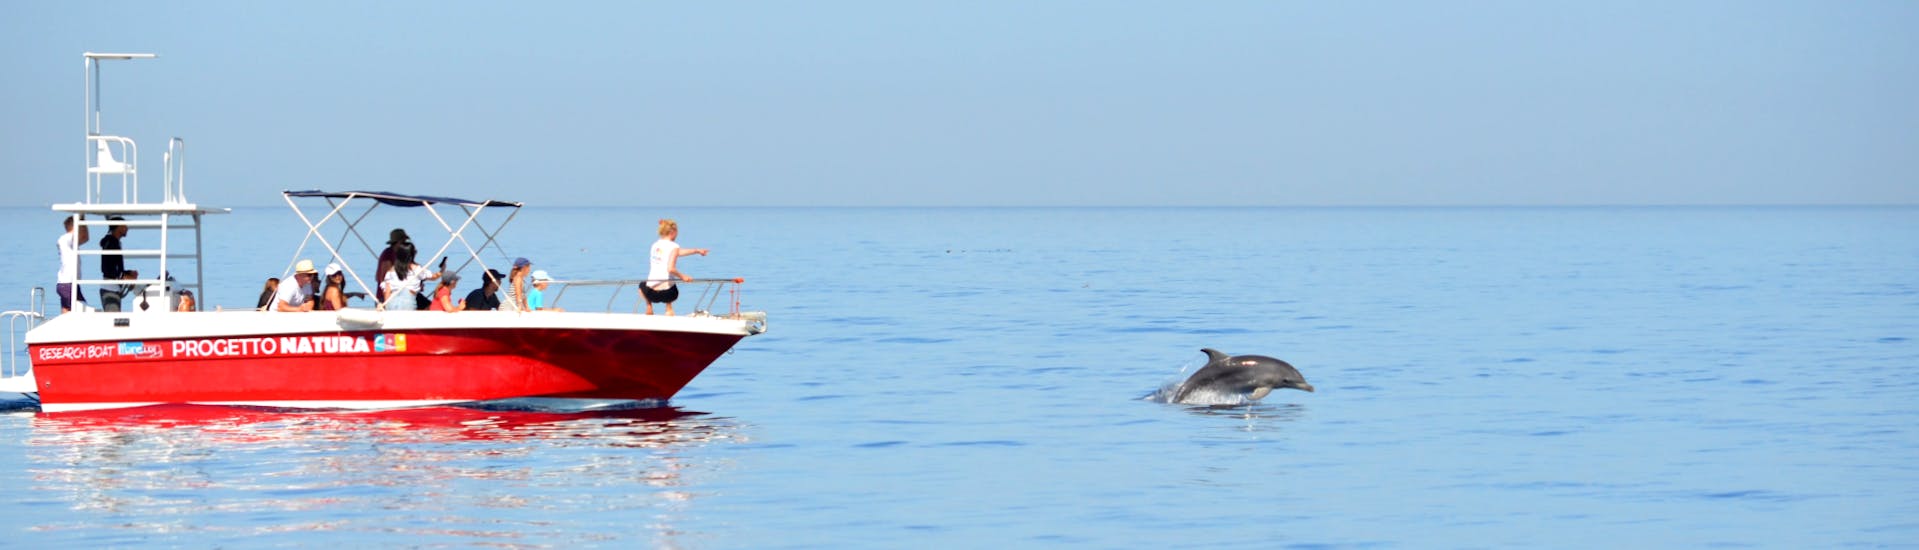 Een groep deelnemers tijdens de boottocht met dolfijnen spotten en snorkelen in Alghero heeft zojuist een groep zoogdieren gespot met Progetto Natura.